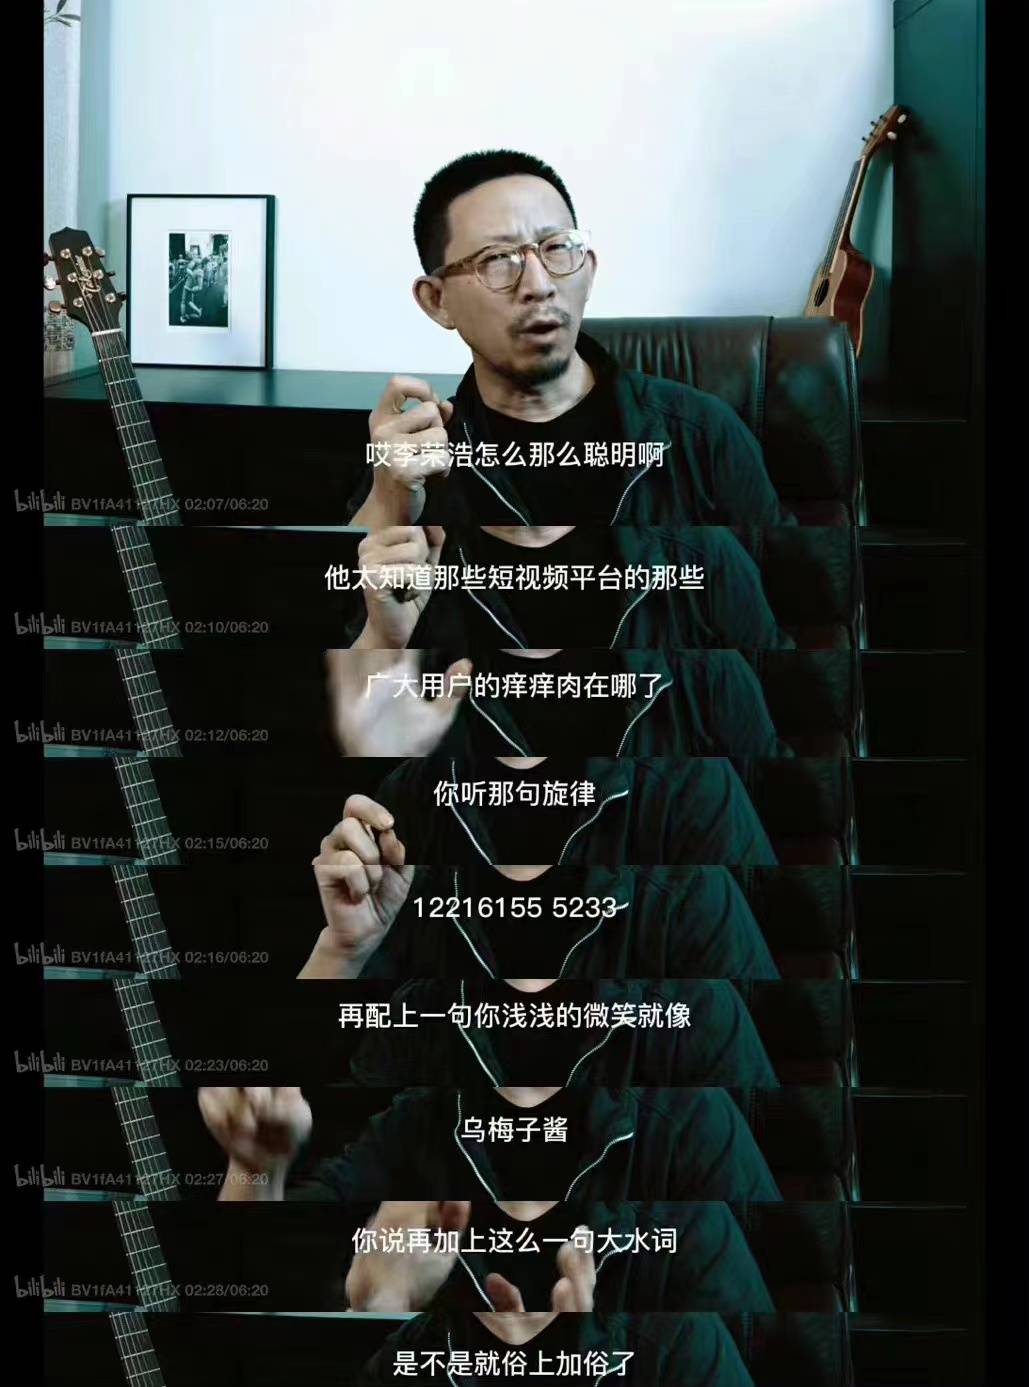 【丁太升】华语乐坛 の 油腻歌手 与 优秀的艺术表达者-我食一只鱼-我食一只鱼-哔哩哔哩视频